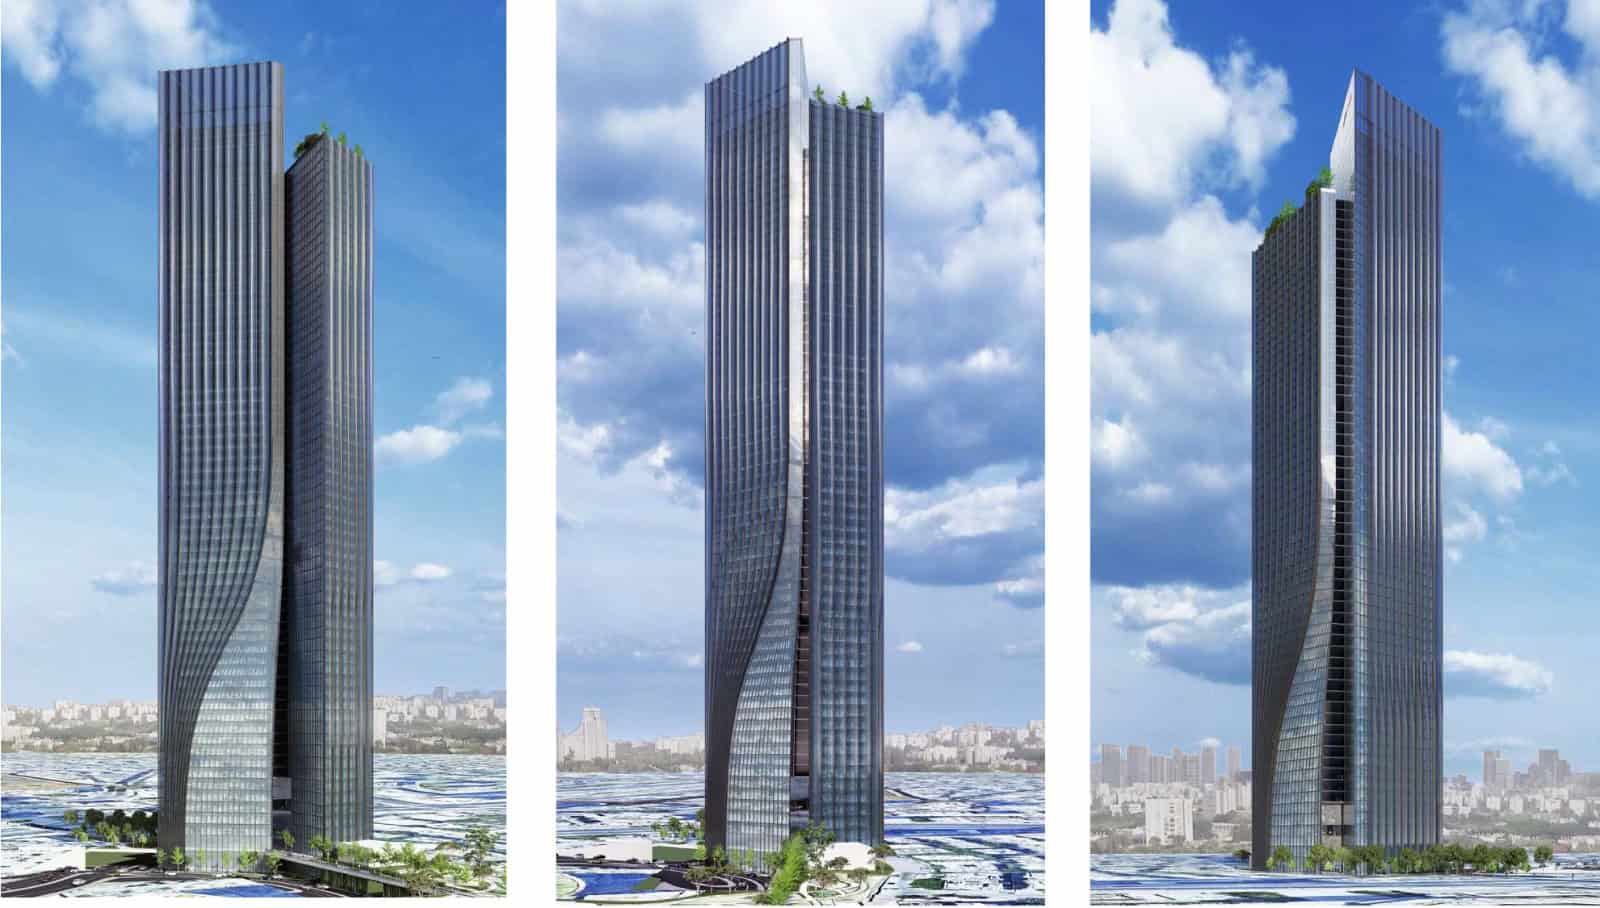 יחליף 3 בנייני משרדים נמוכים. בניין יורוקום | הדמייה: חברת קנדה ישראל, מילוסלבסקי אדריכלים